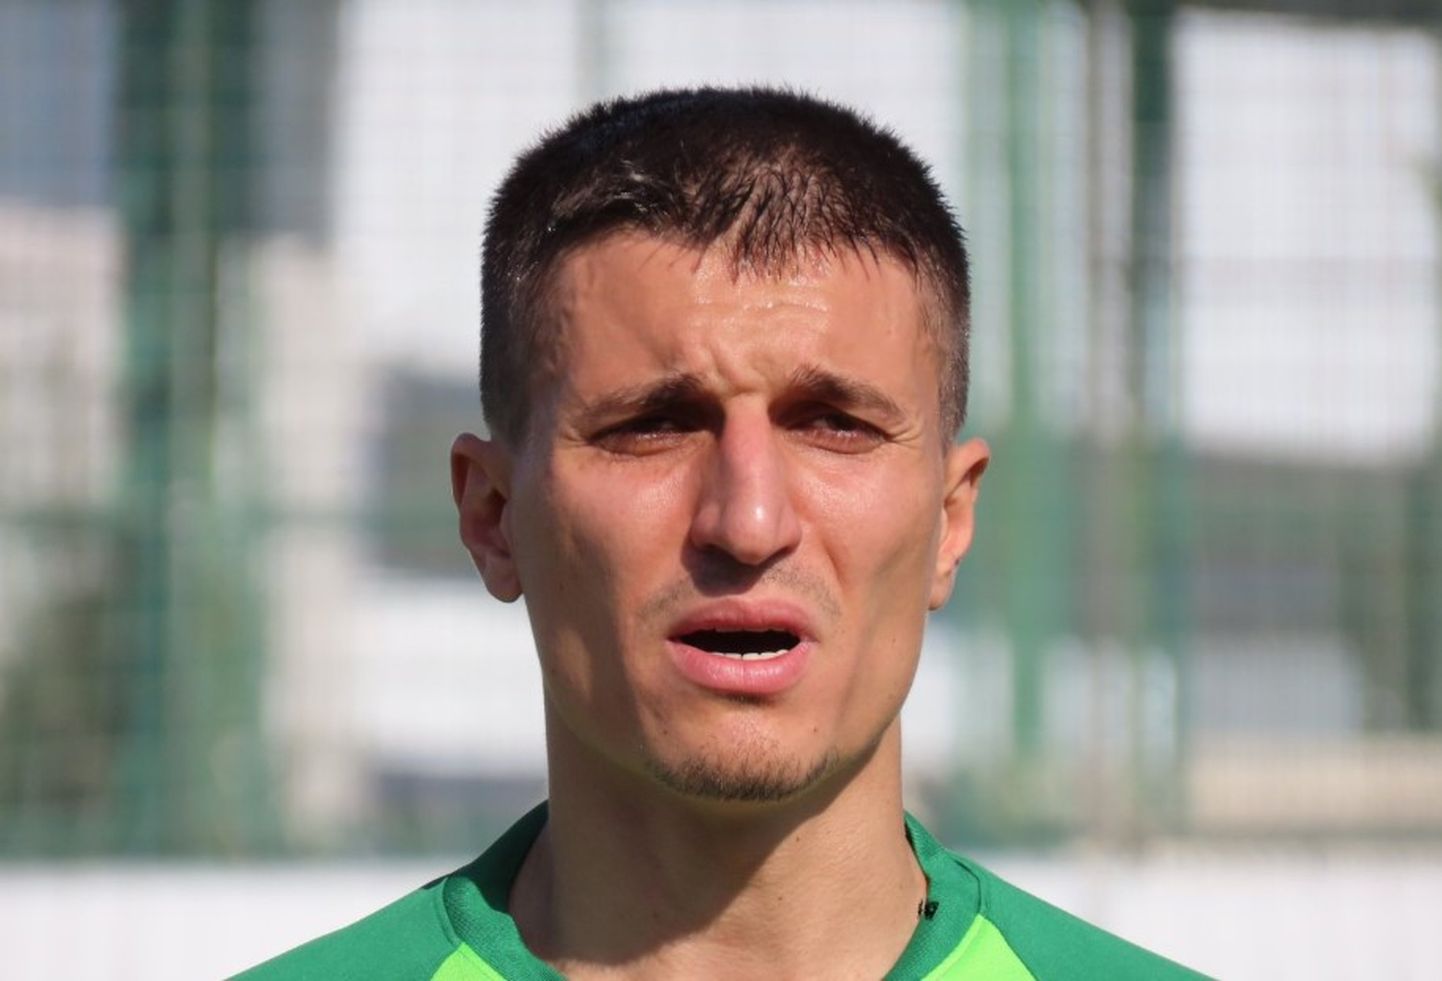 Lapse tapmise üles tunnistanud 32-aastane jalgpallur Cevher Toktas esindas viimati Türgi klubi Bursa Yildirimspori.